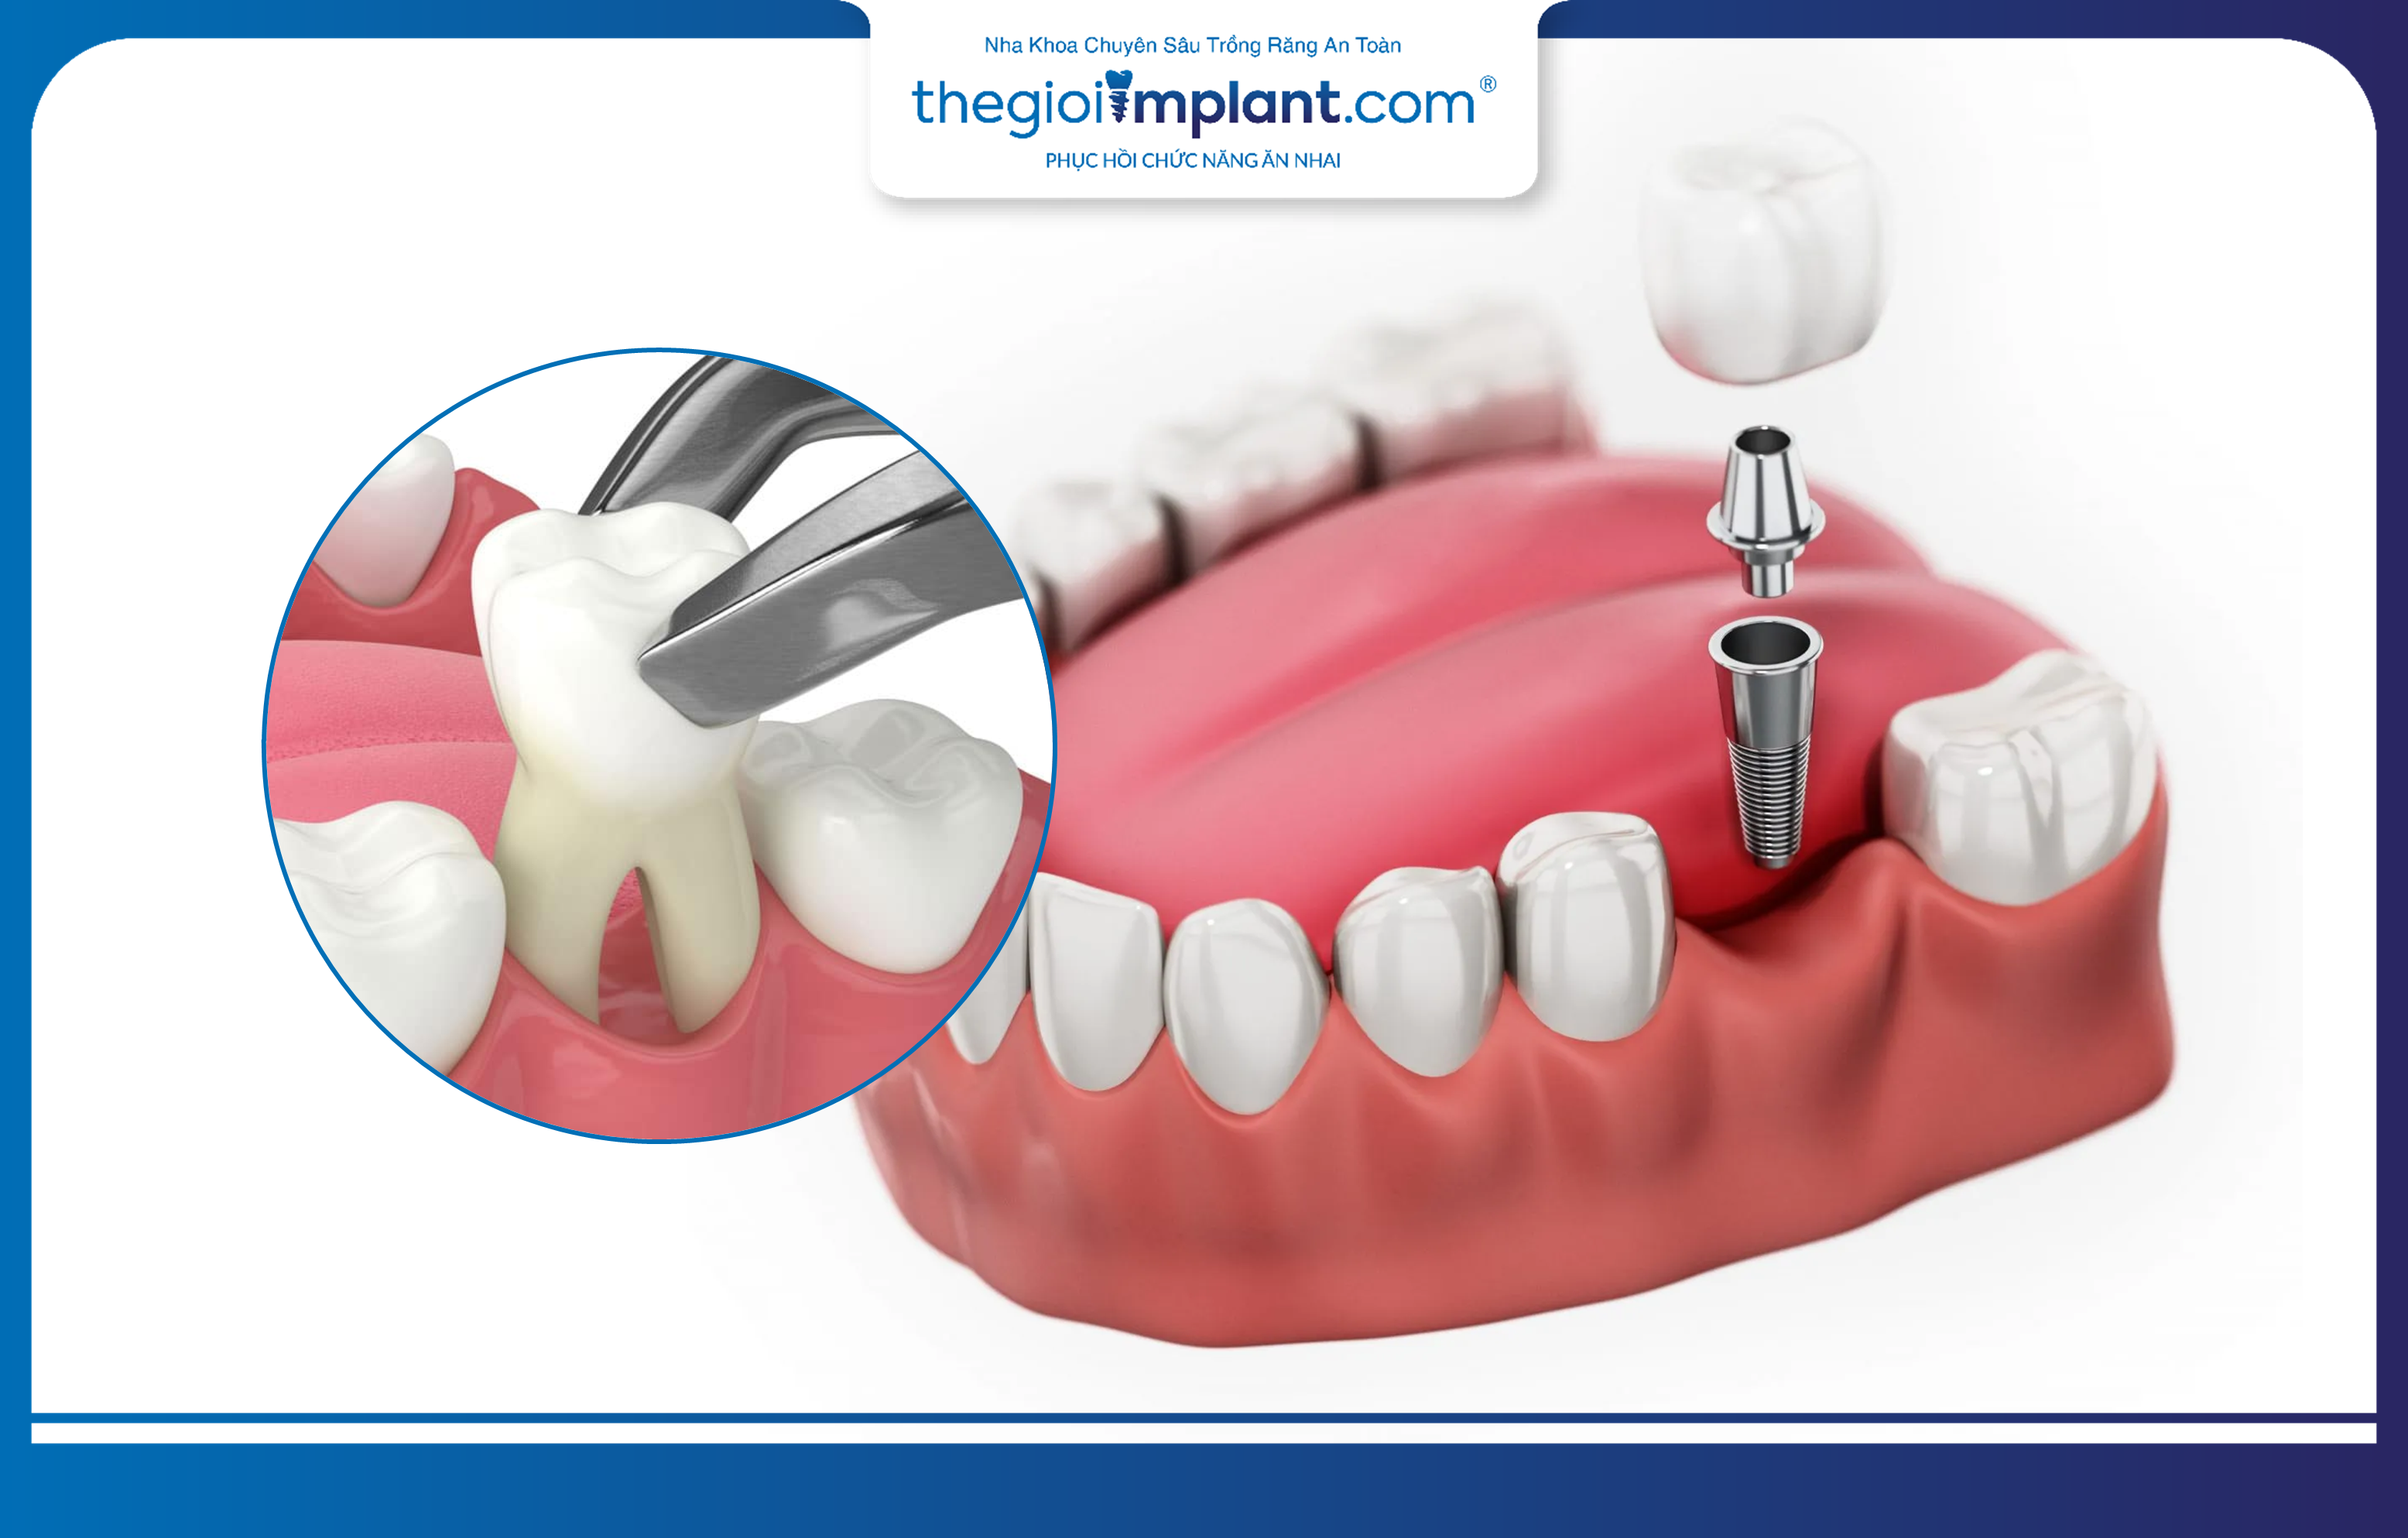 Trồng răng Implant và phục hình tức thì sau khi nhổ răng